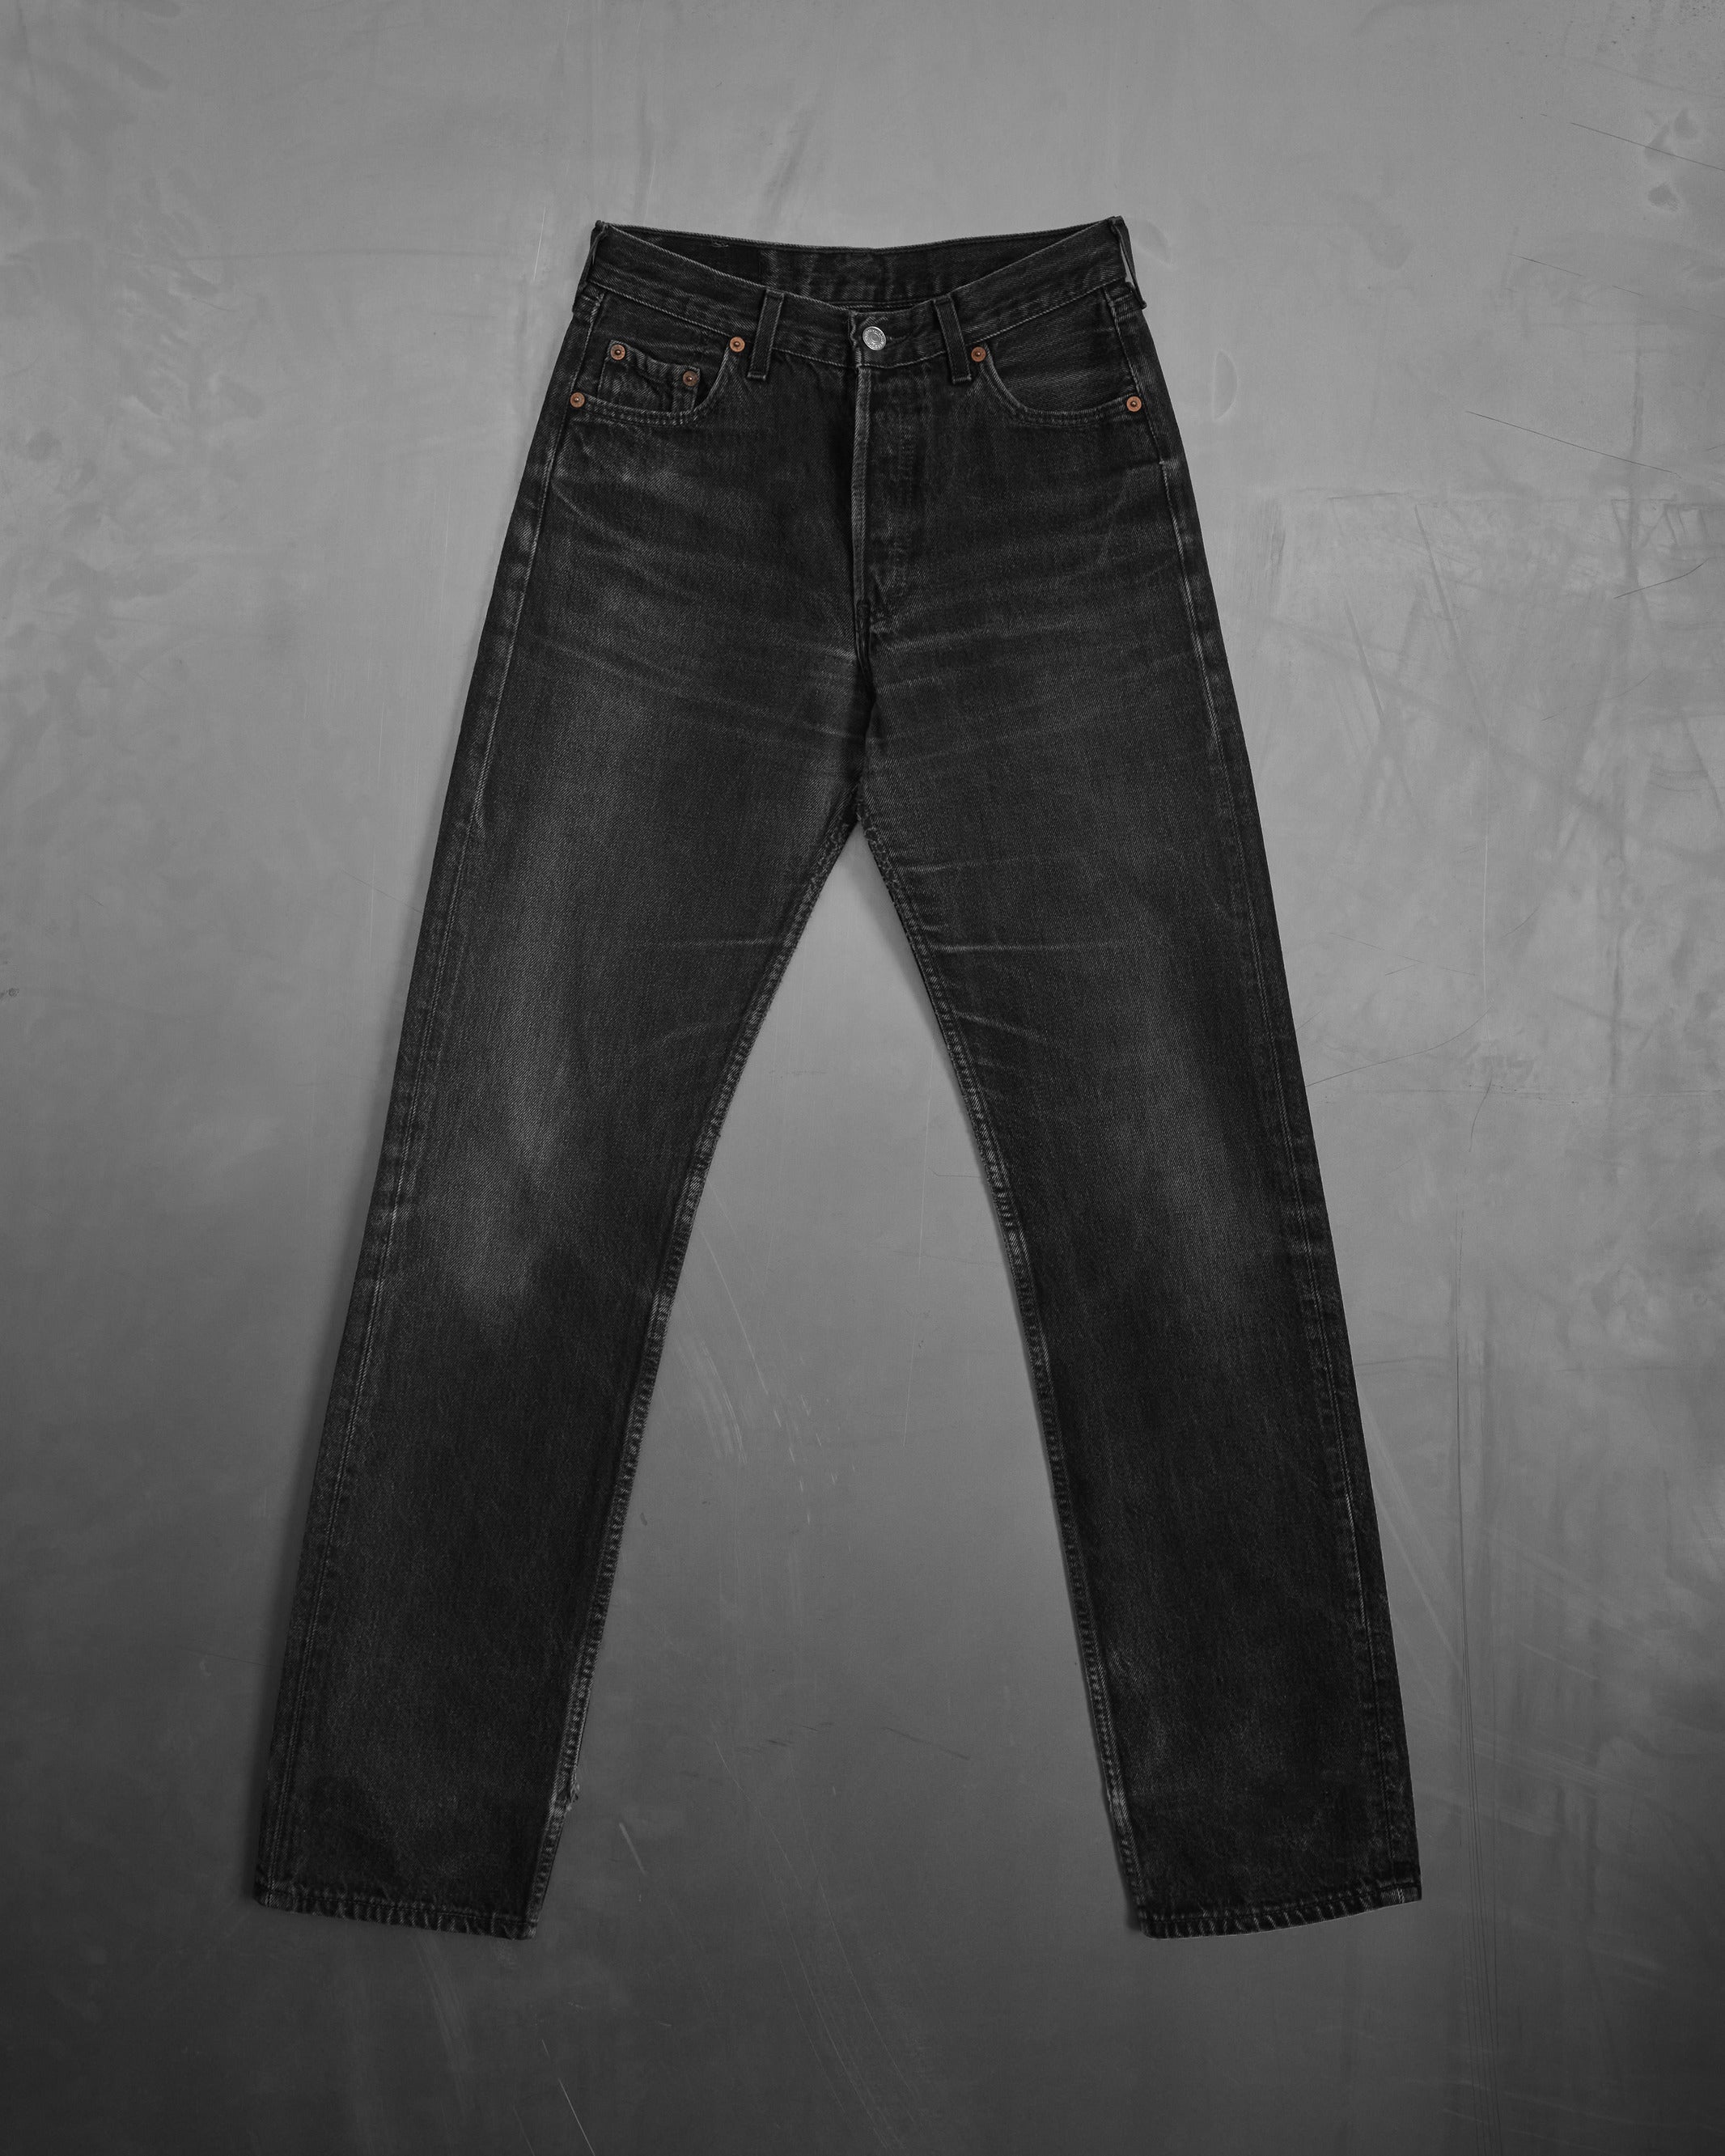 Vintage Levi's 501 Black Jeans